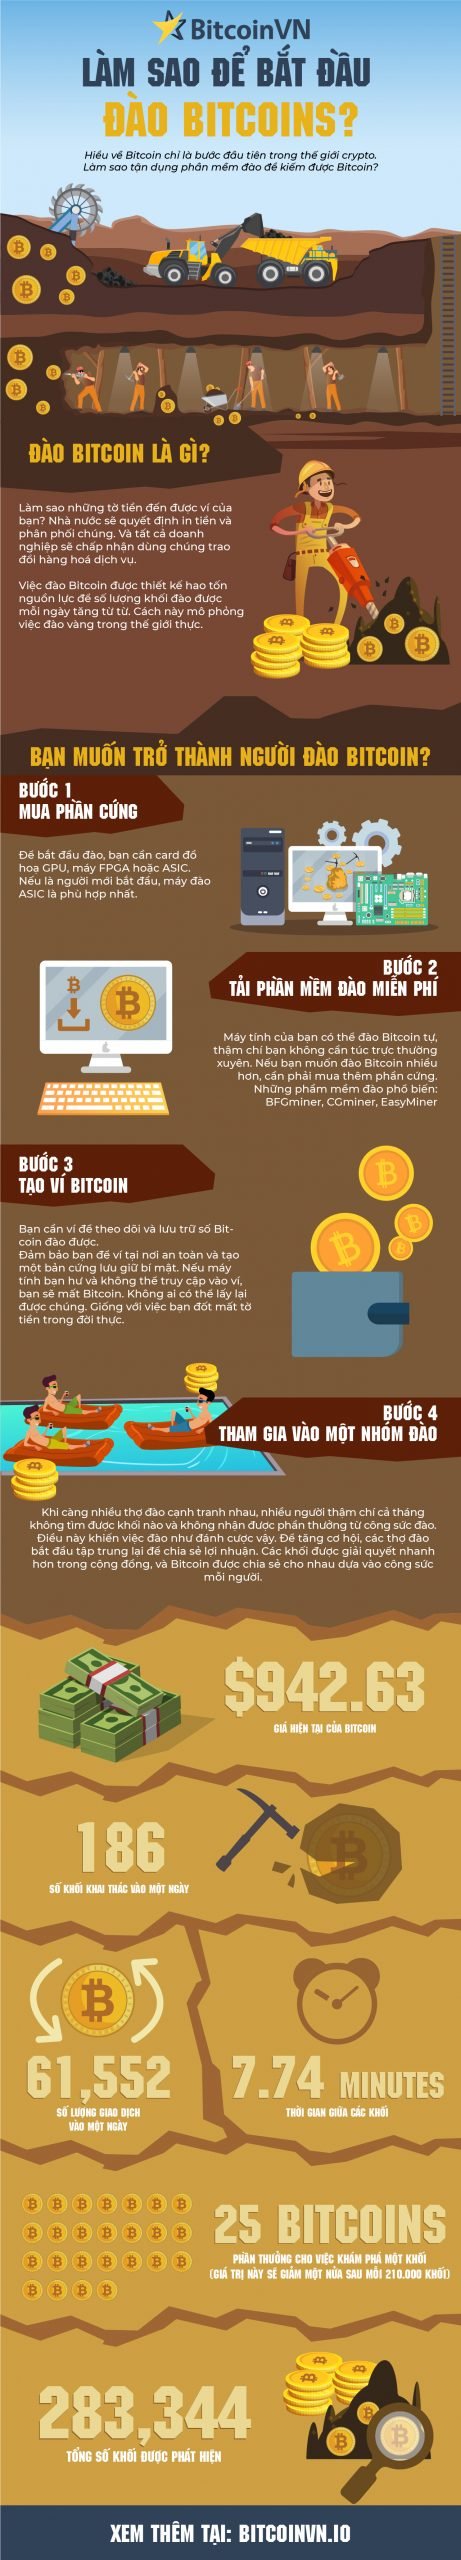 Infographic: Làm sao để đào Bitcoin 2020